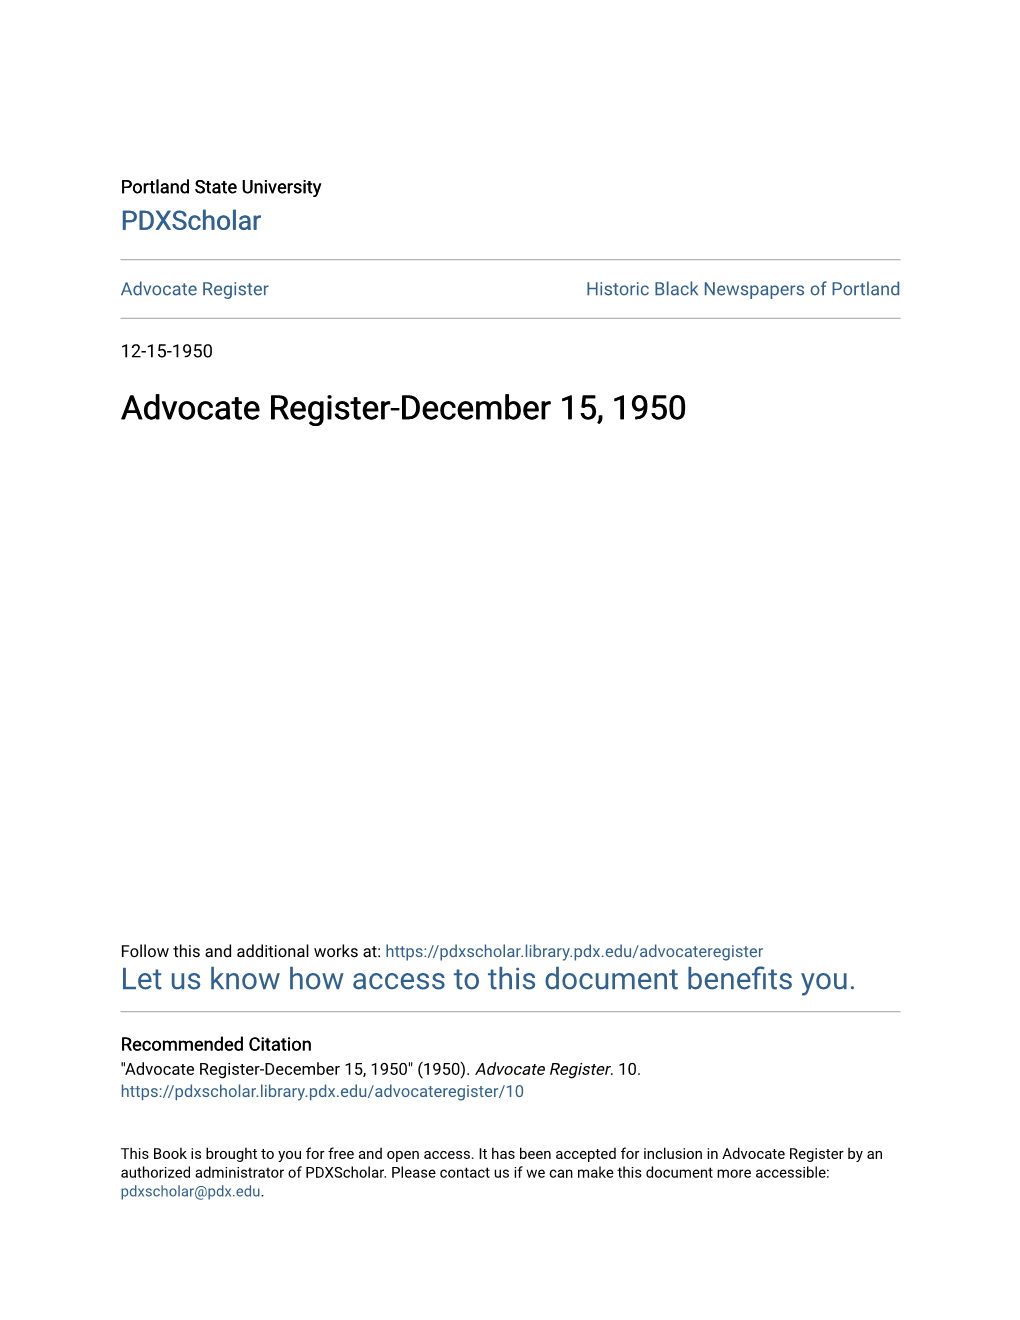 Advocate Register-December 15, 1950